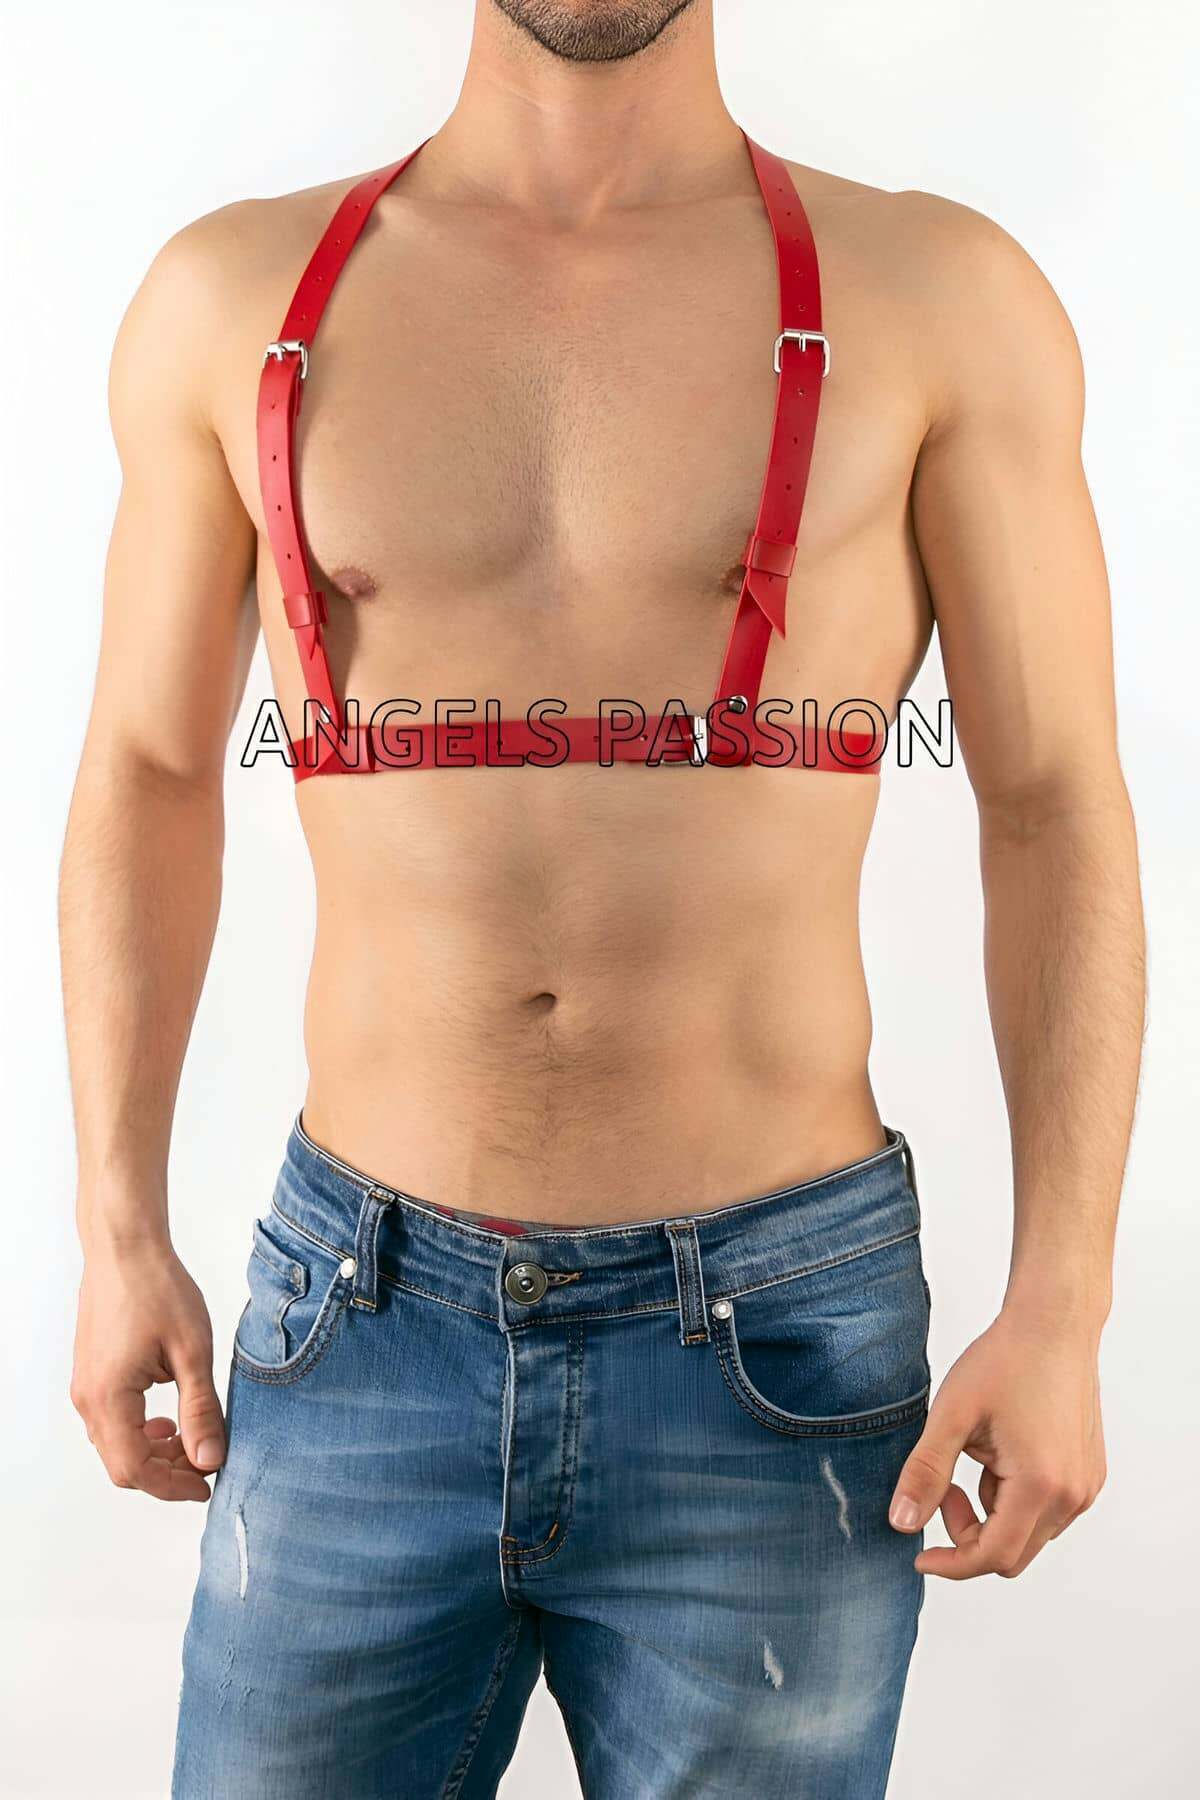 Deri Erkek İç Giyim, Gay Fantazi Giyim Modelleri - APFTM26